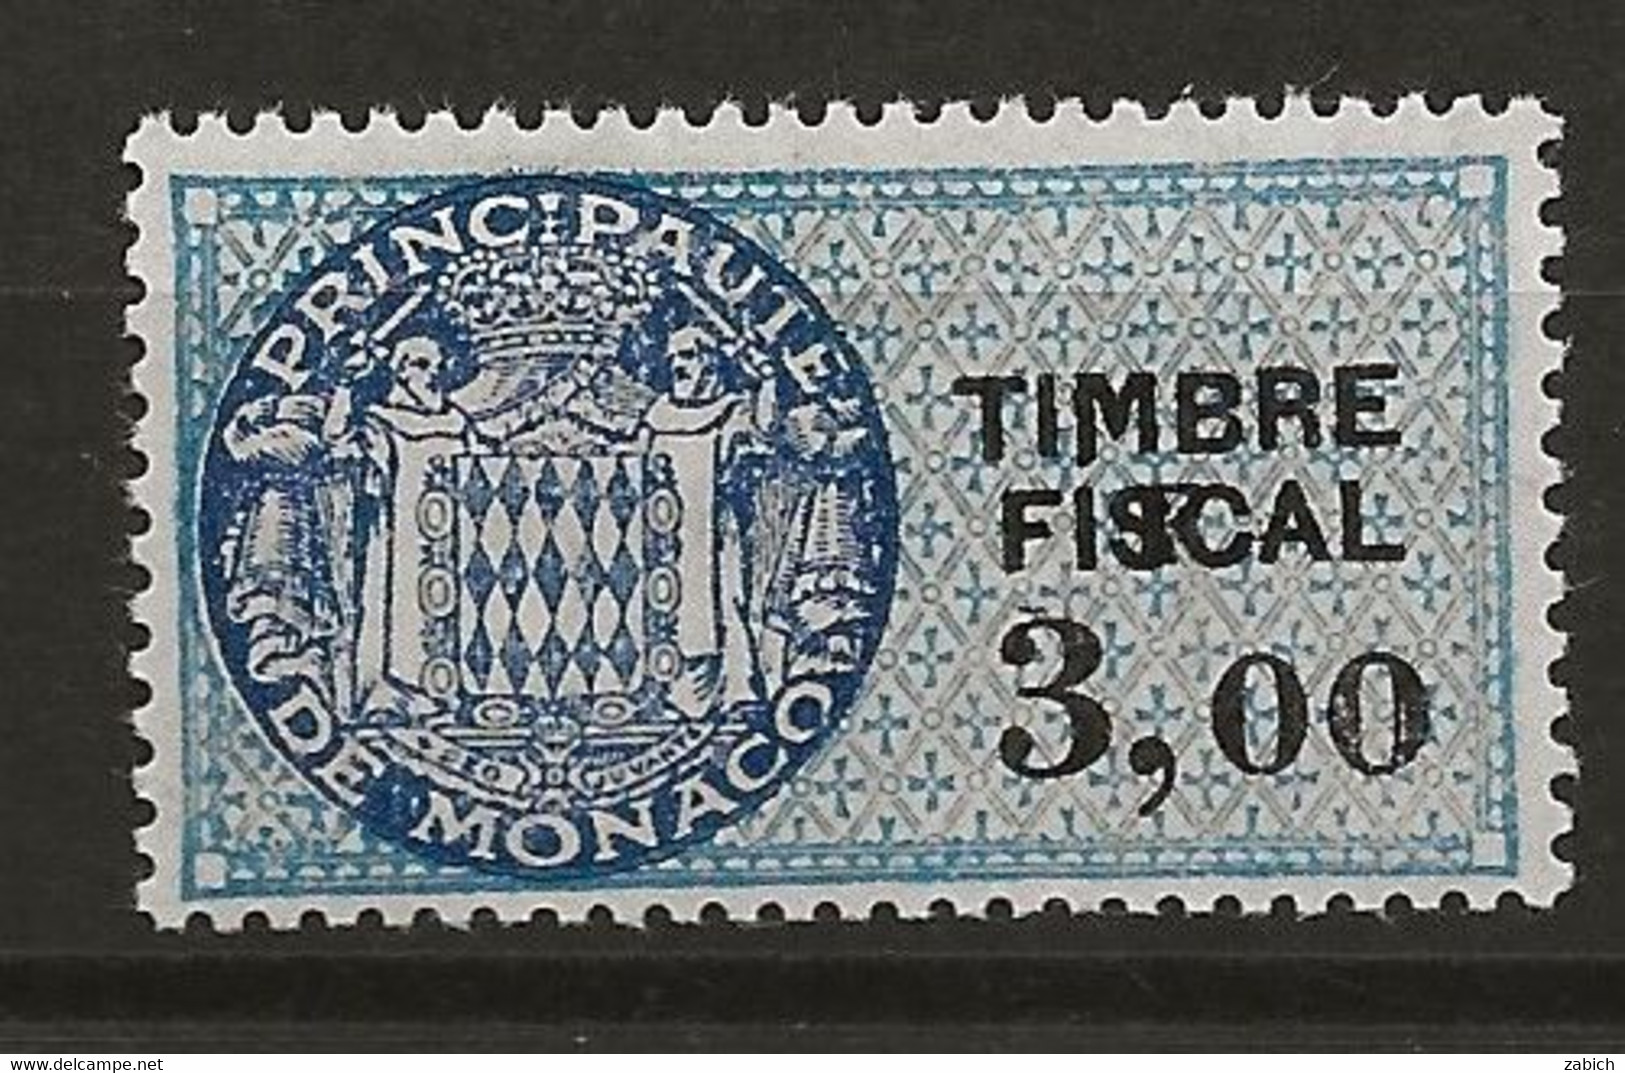 TIMBRES FISCAUX DE MONACO SERIE UNIFIEE  VARIETE F De La Valeur Décalé Sur N° 68 3,F00 Bleu (**) - Fiscaux